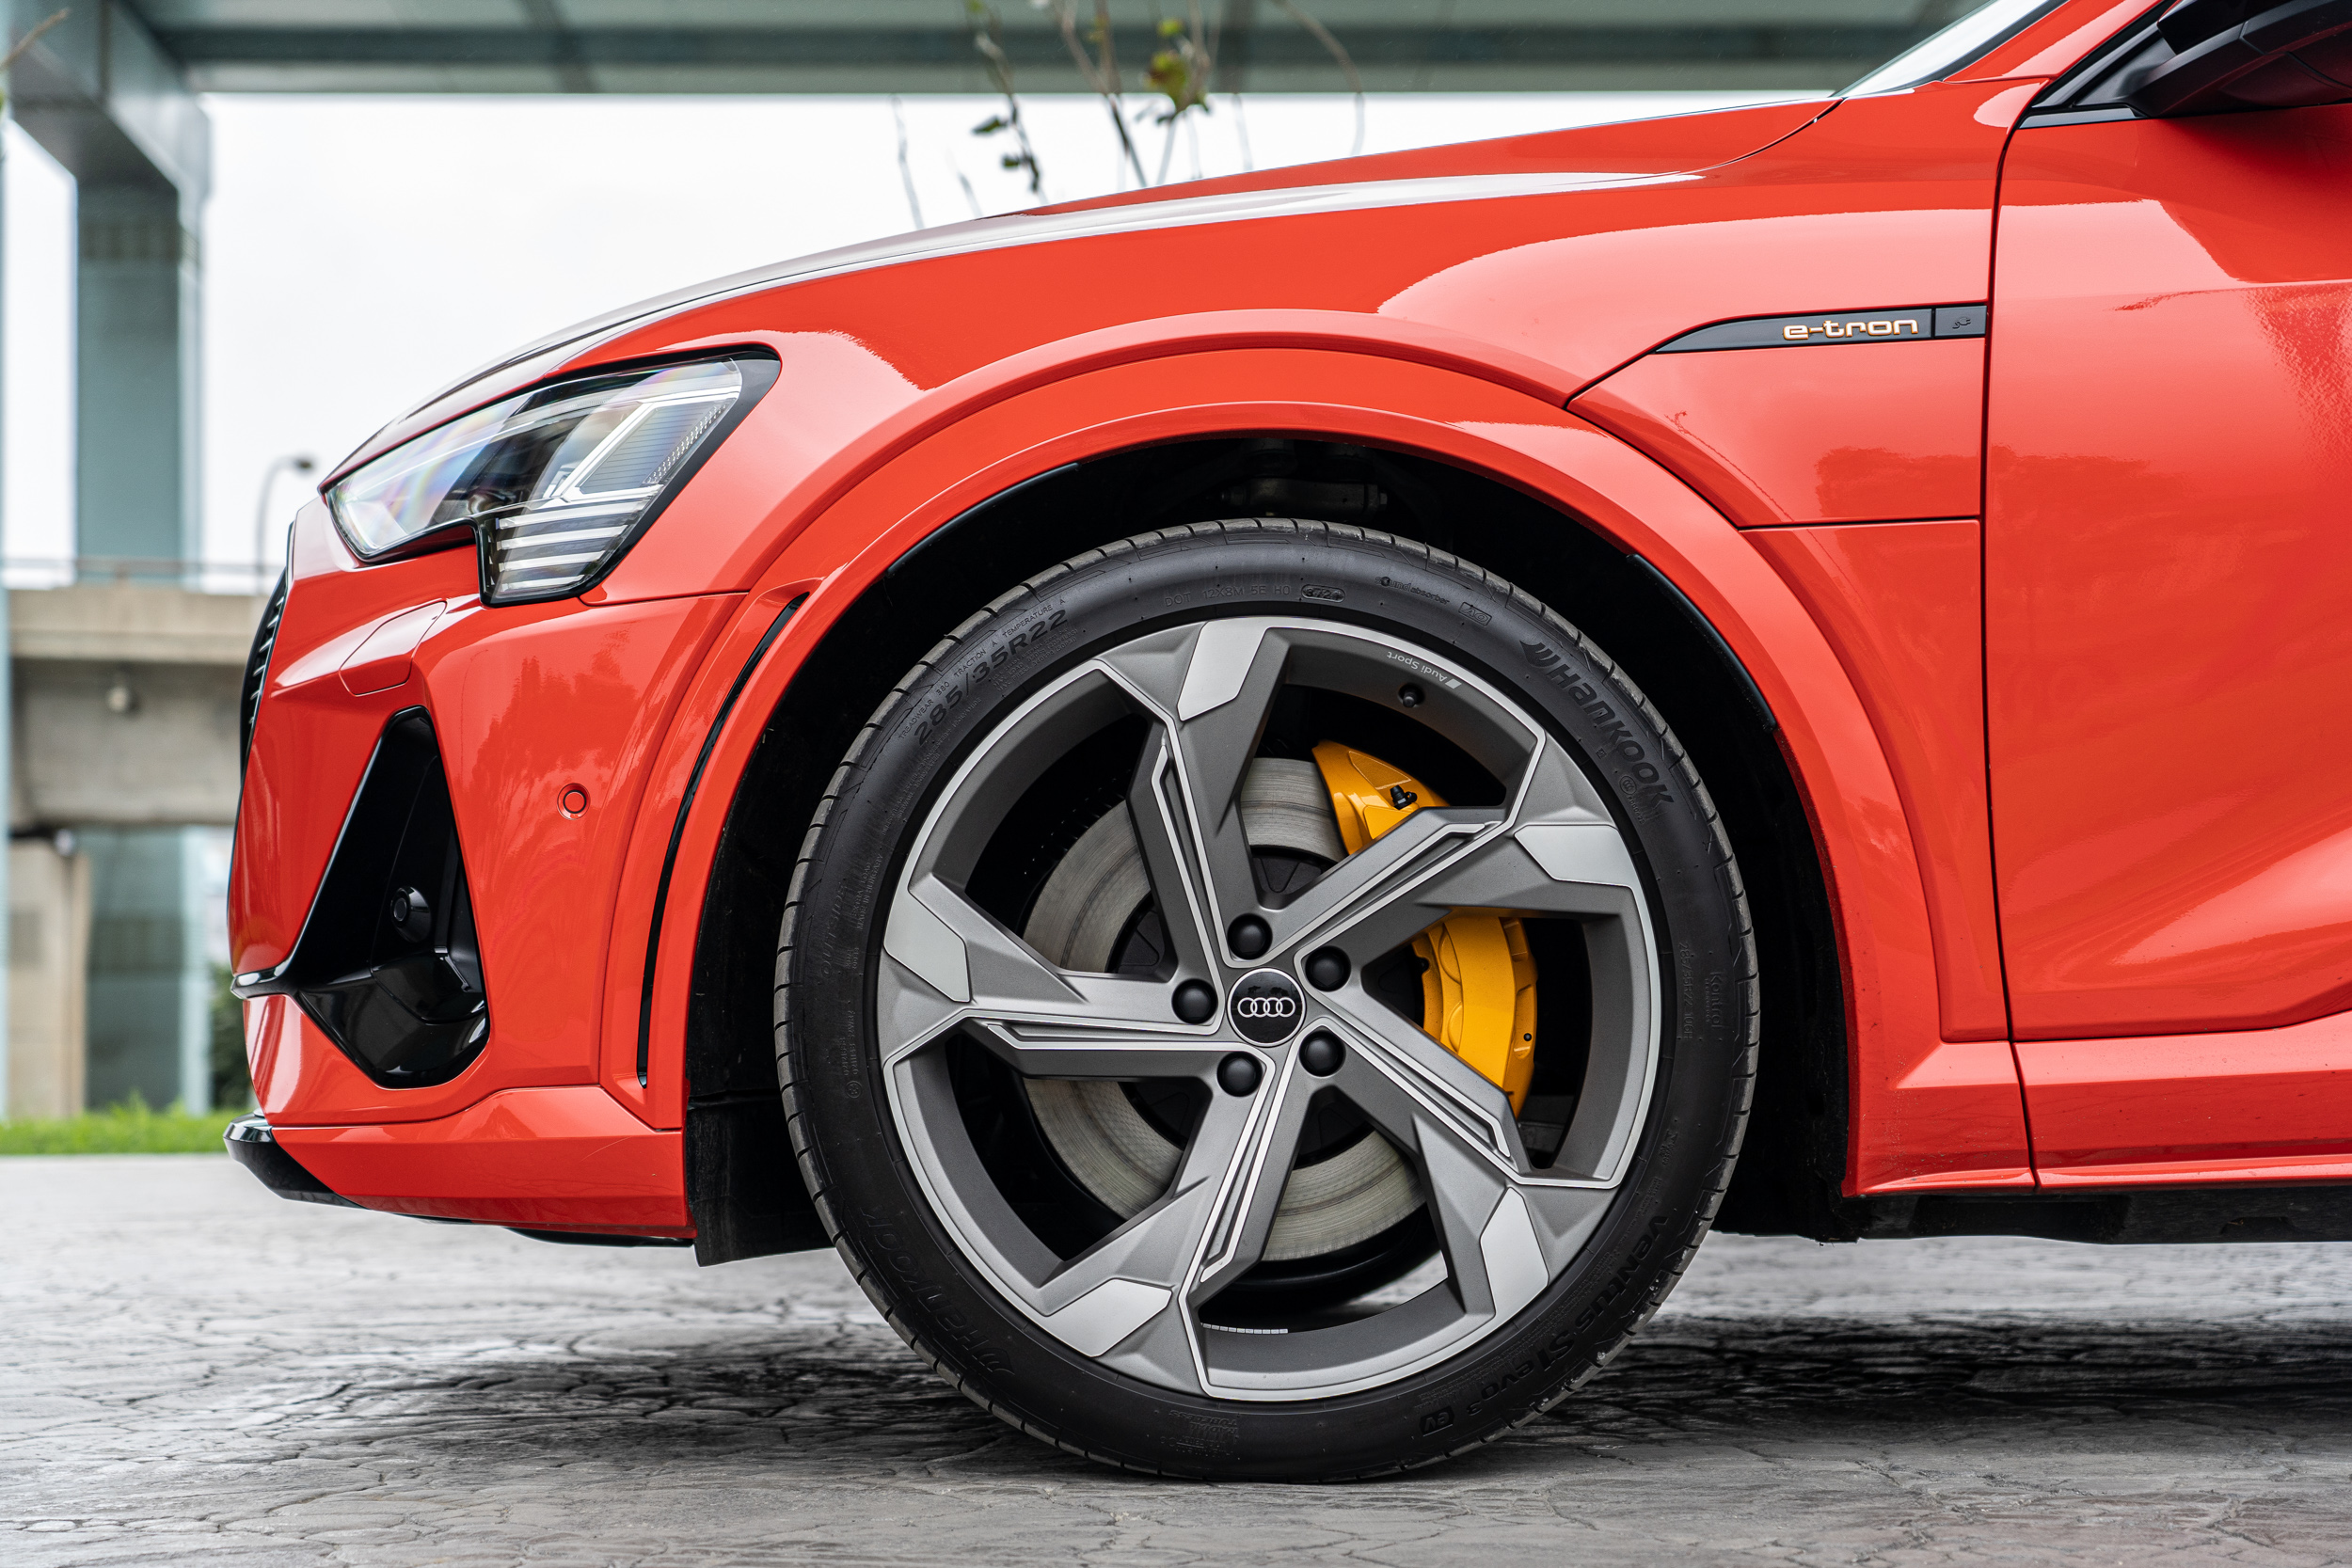 極其誇張的 285 / 35 R22 規格圈胎組，為 Audi Sport 部門專屬研發，目前僅限定在 S 車型上開放選配。